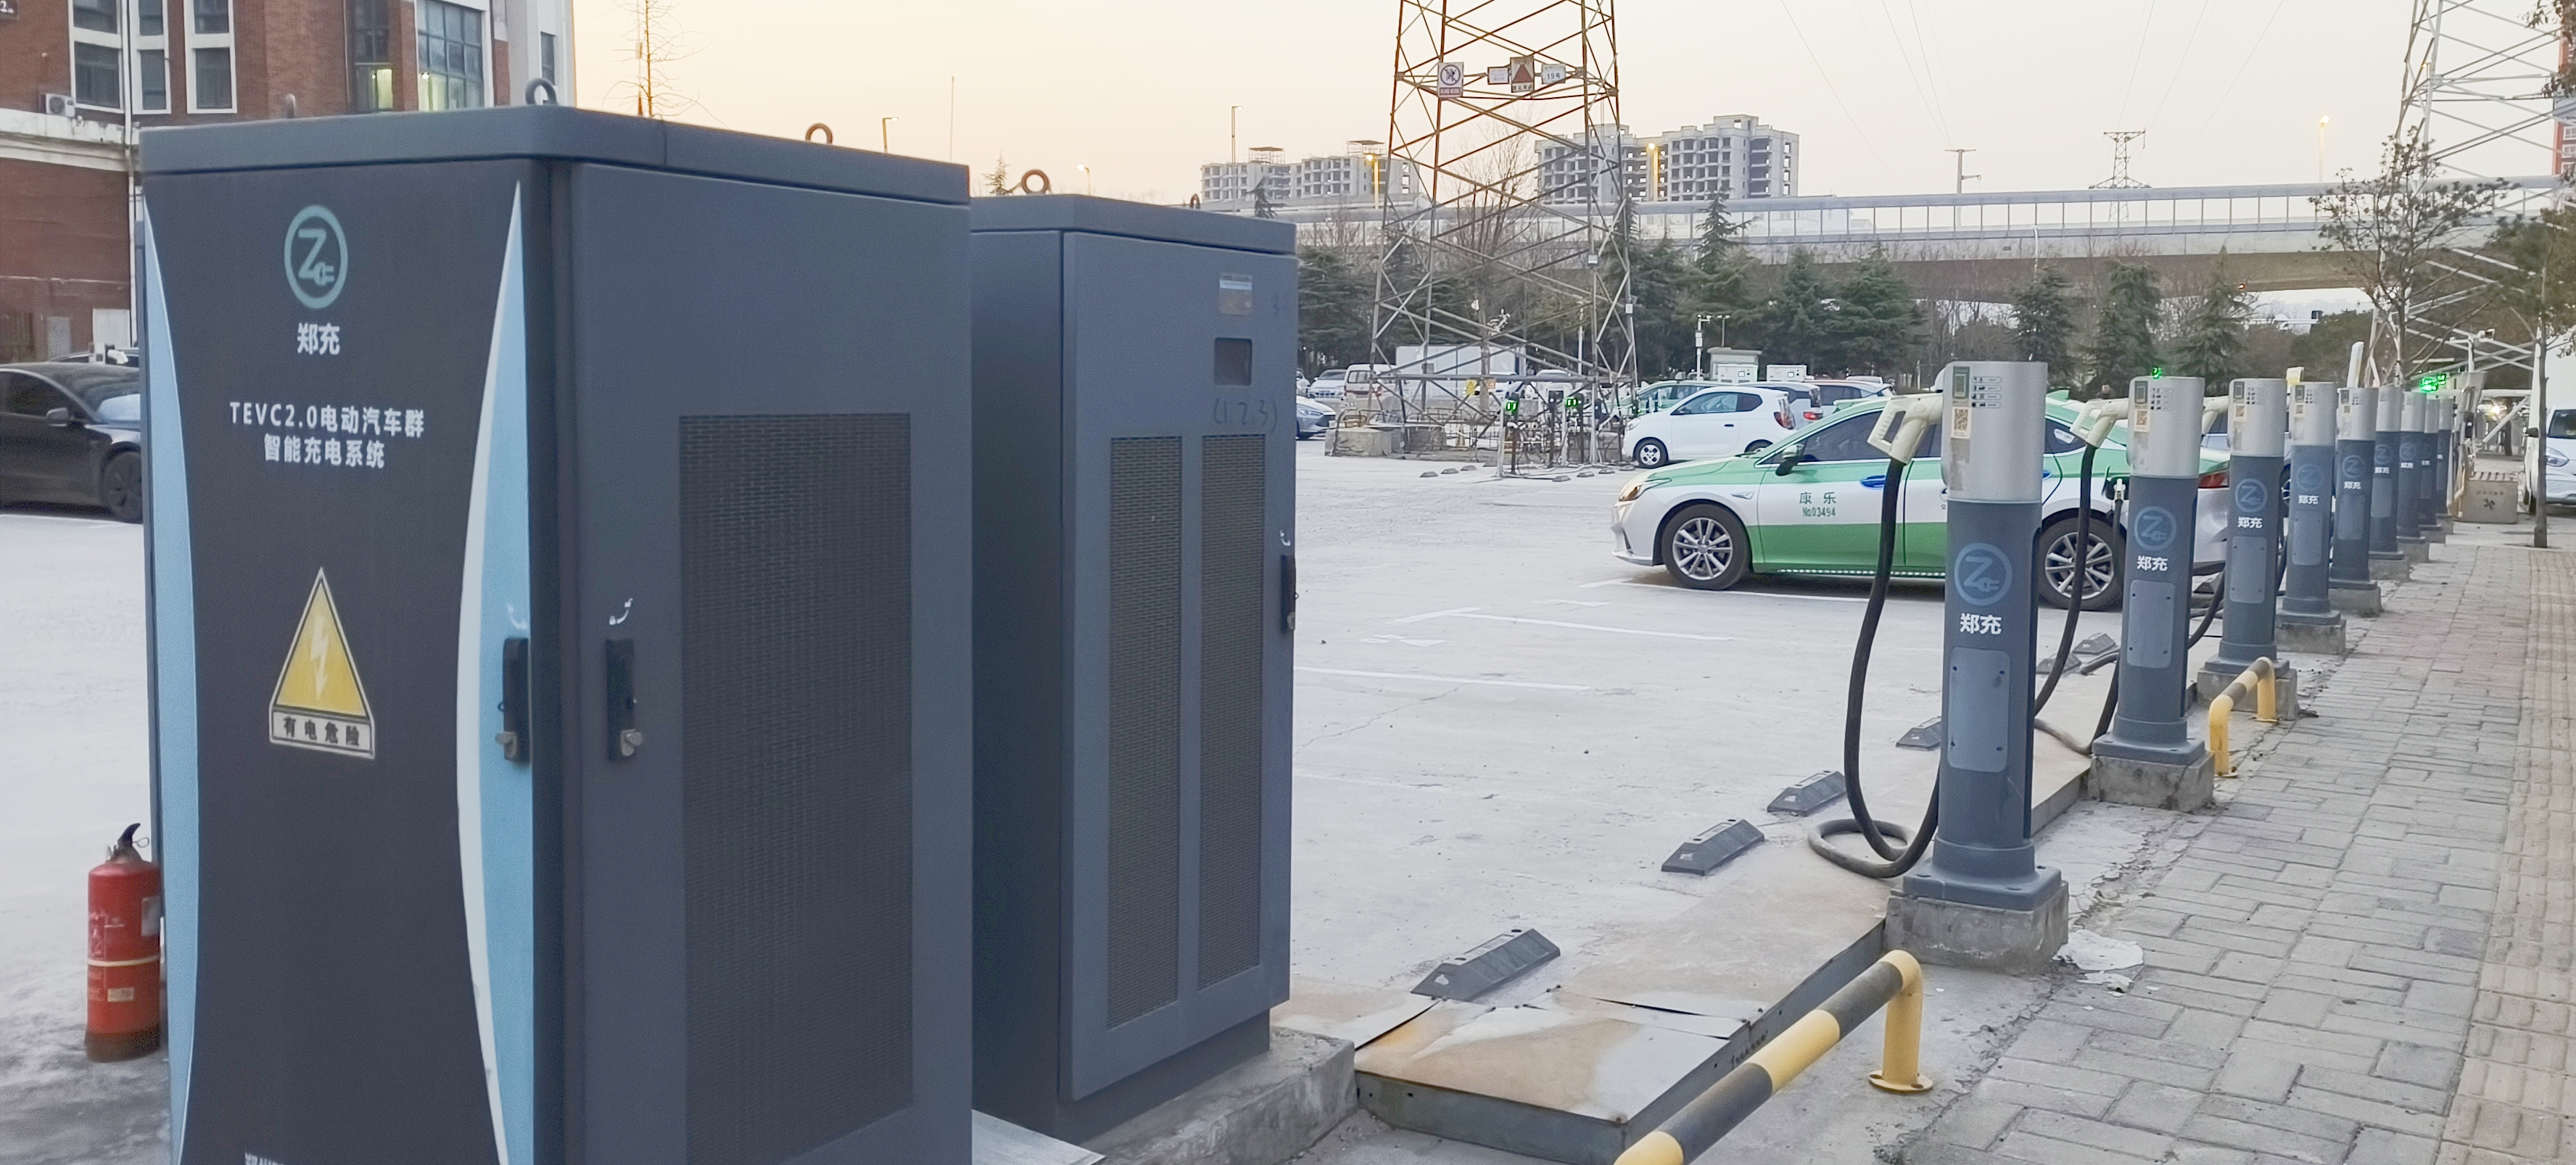 布局电动汽车充电基础设施10年后郑州将有